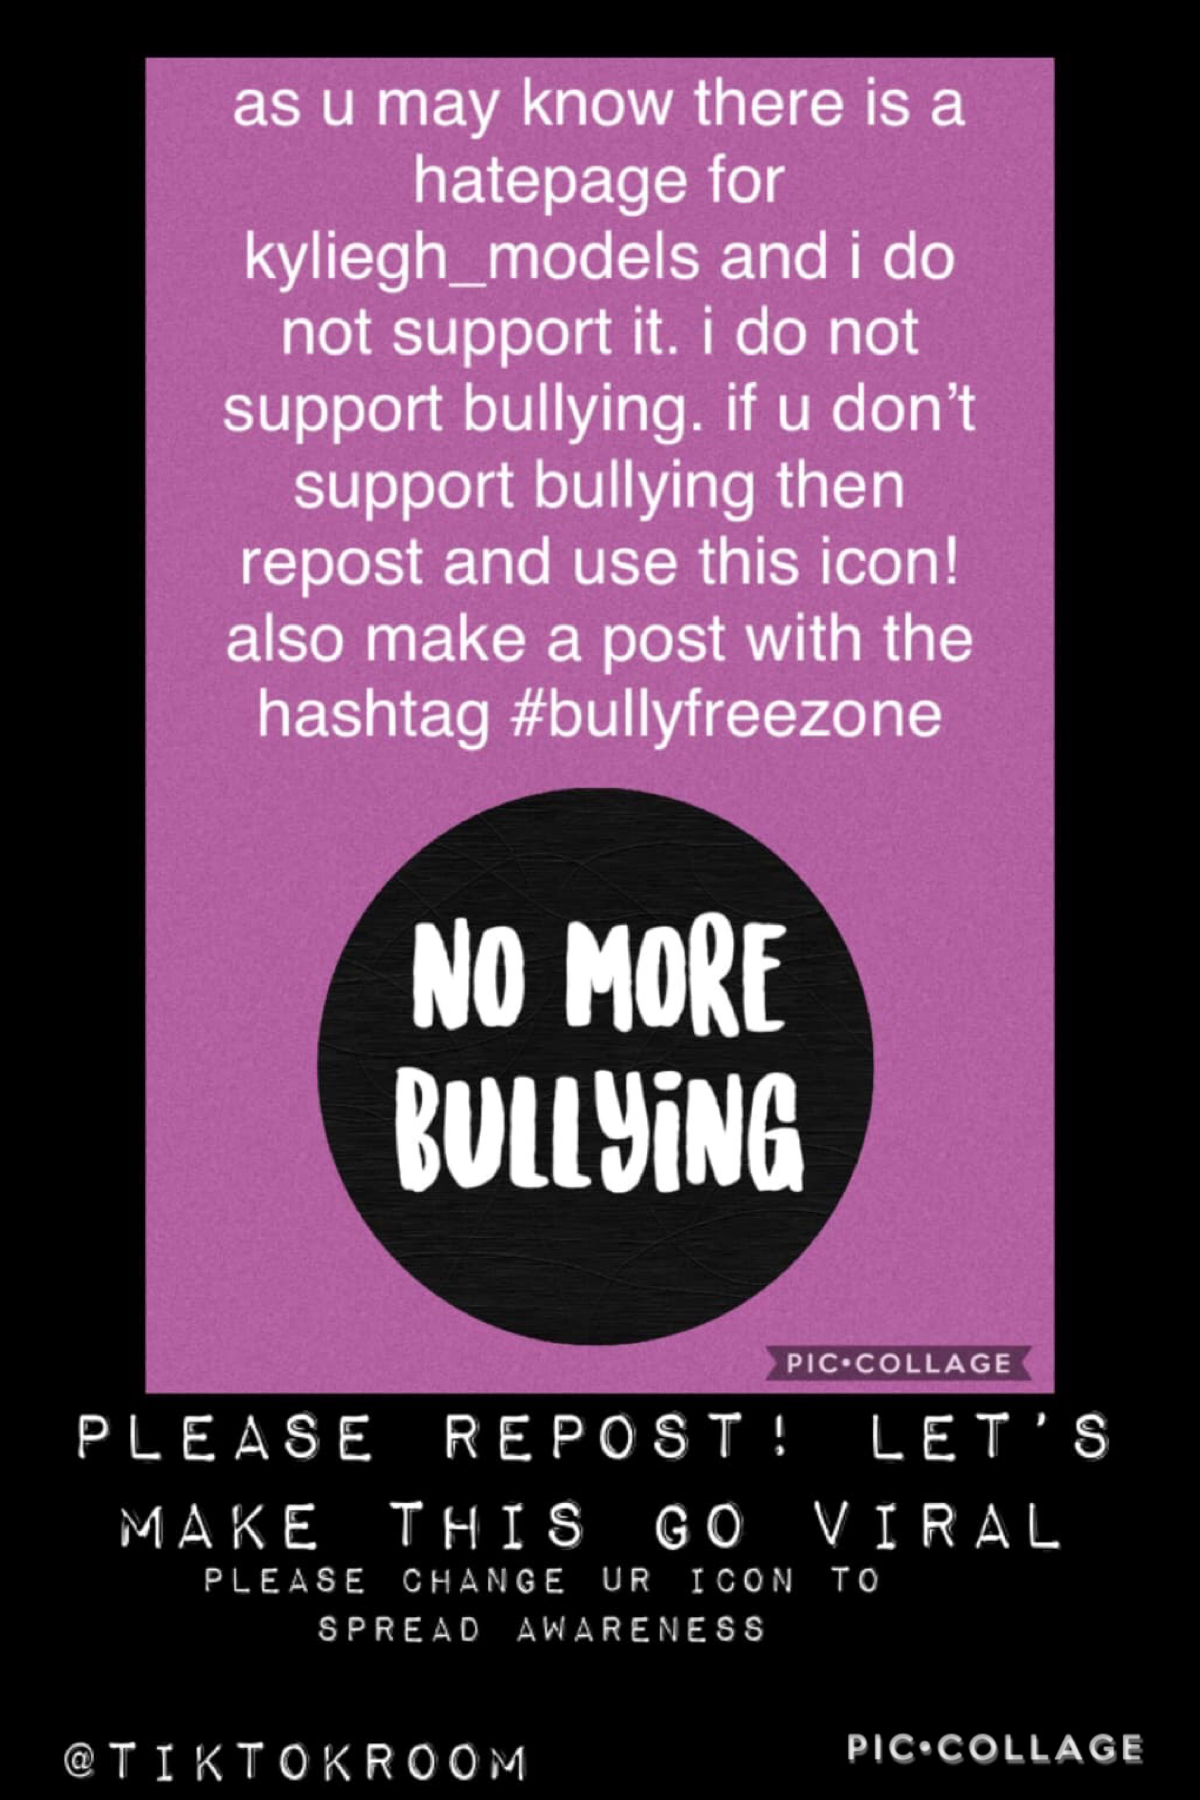 No more bullying